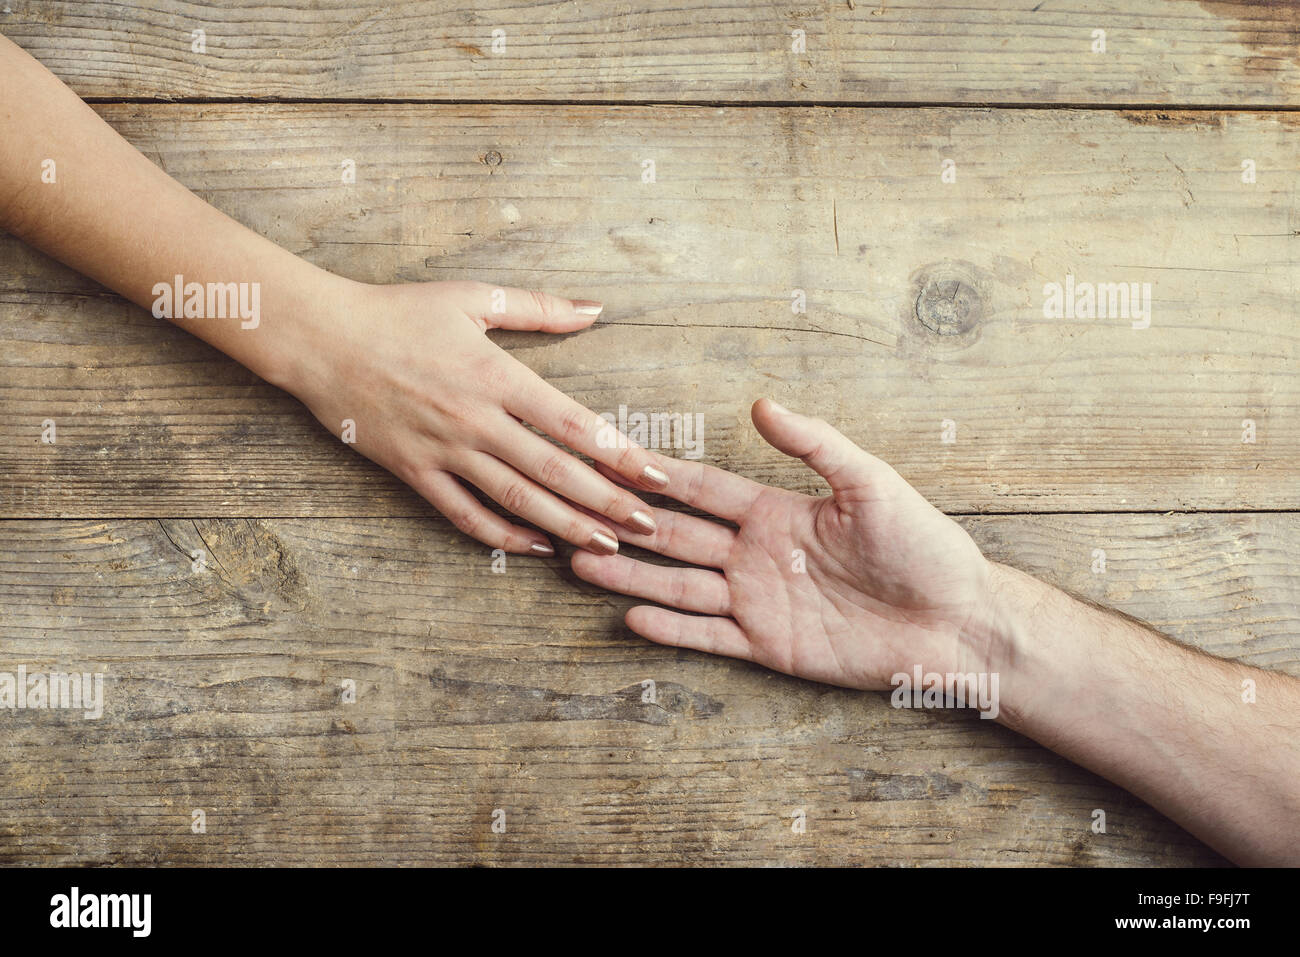 Hände von Mann und Frau zärtlich zusammenzuhalten. Studio auf einem hölzernen Hintergrund erschossen, Ansicht von oben. Stockfoto